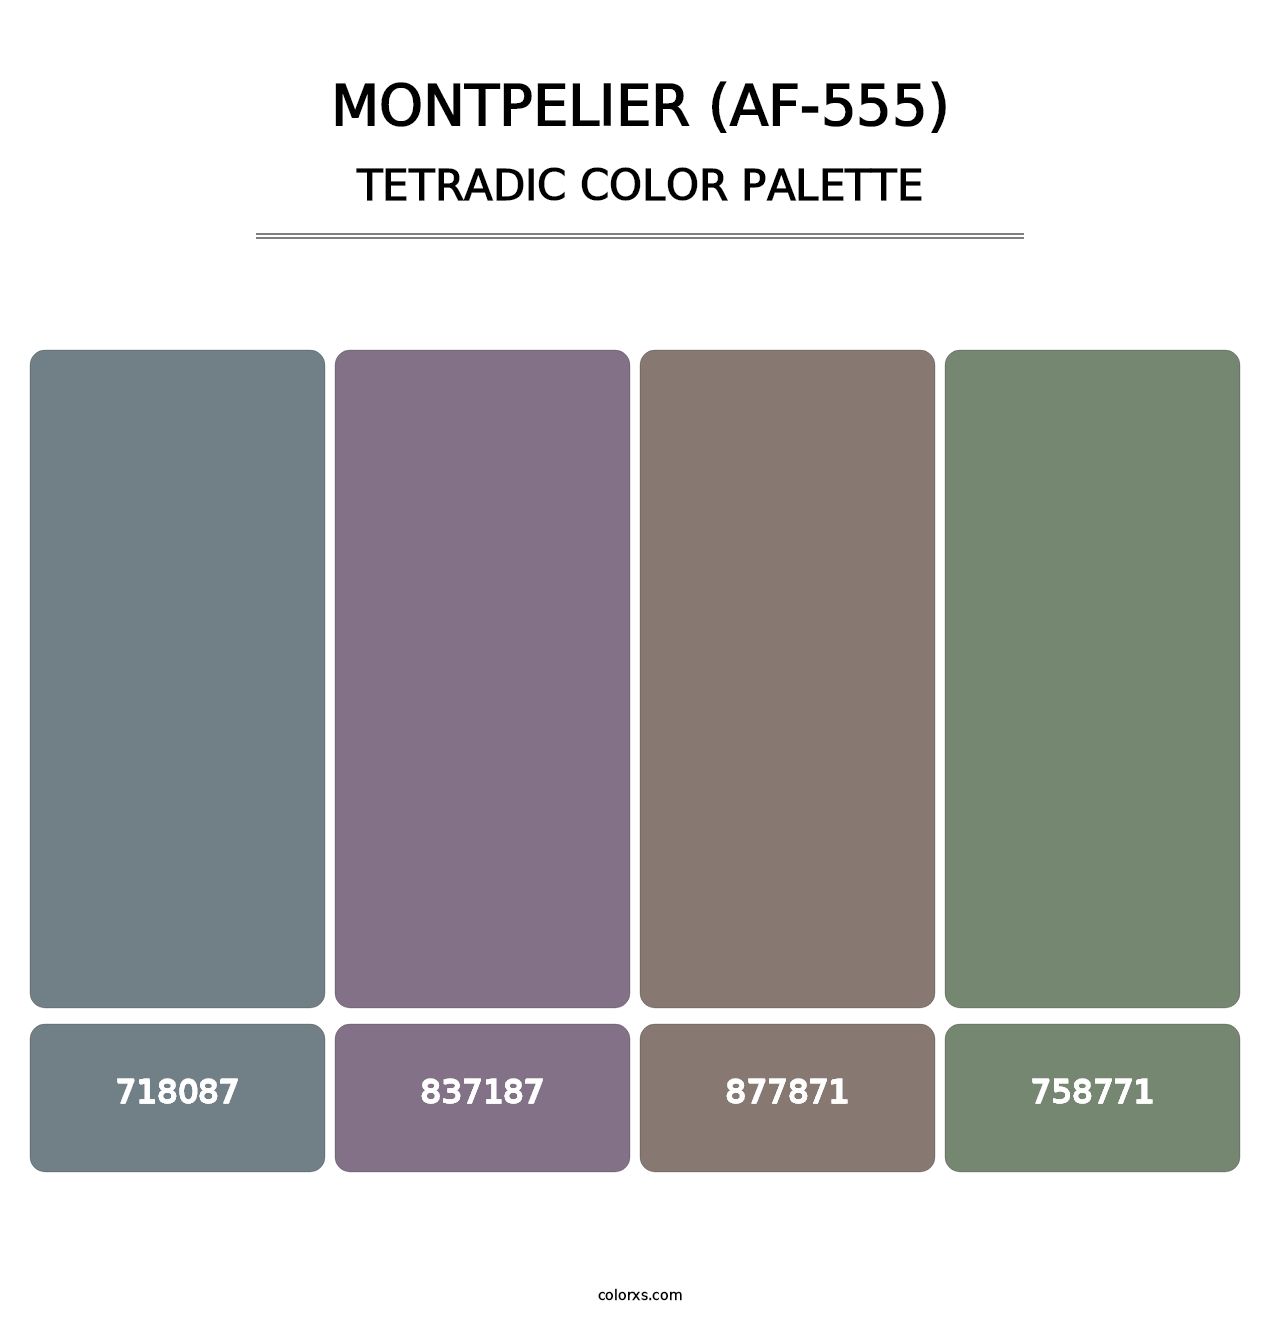 Montpelier (AF-555) - Tetradic Color Palette